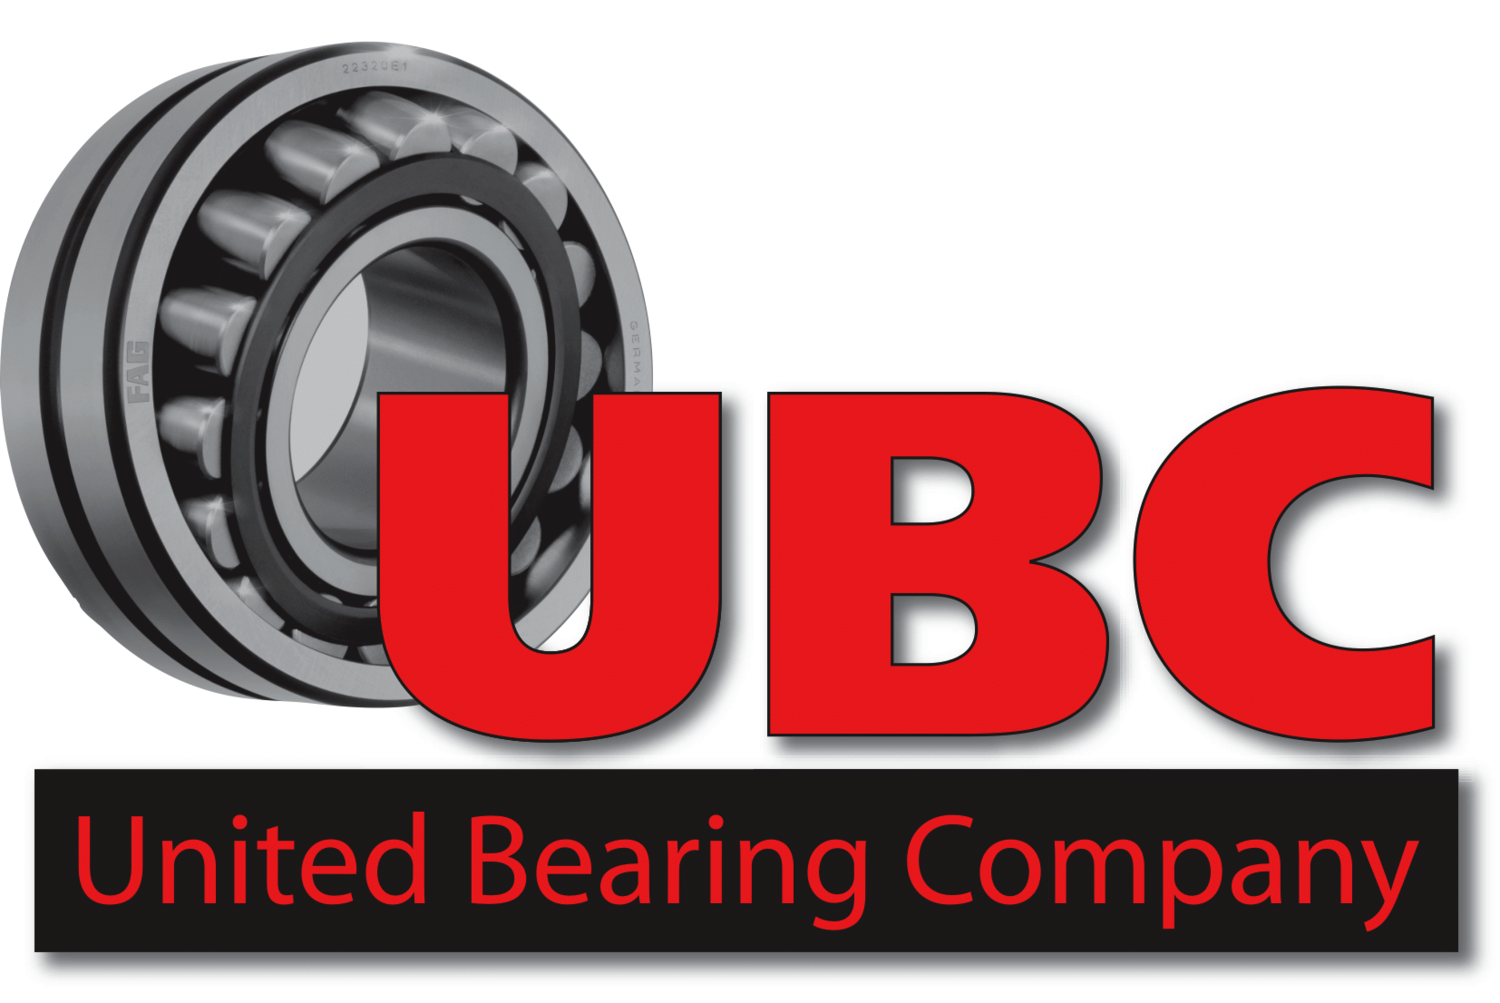 UBC - United Bearing Company 